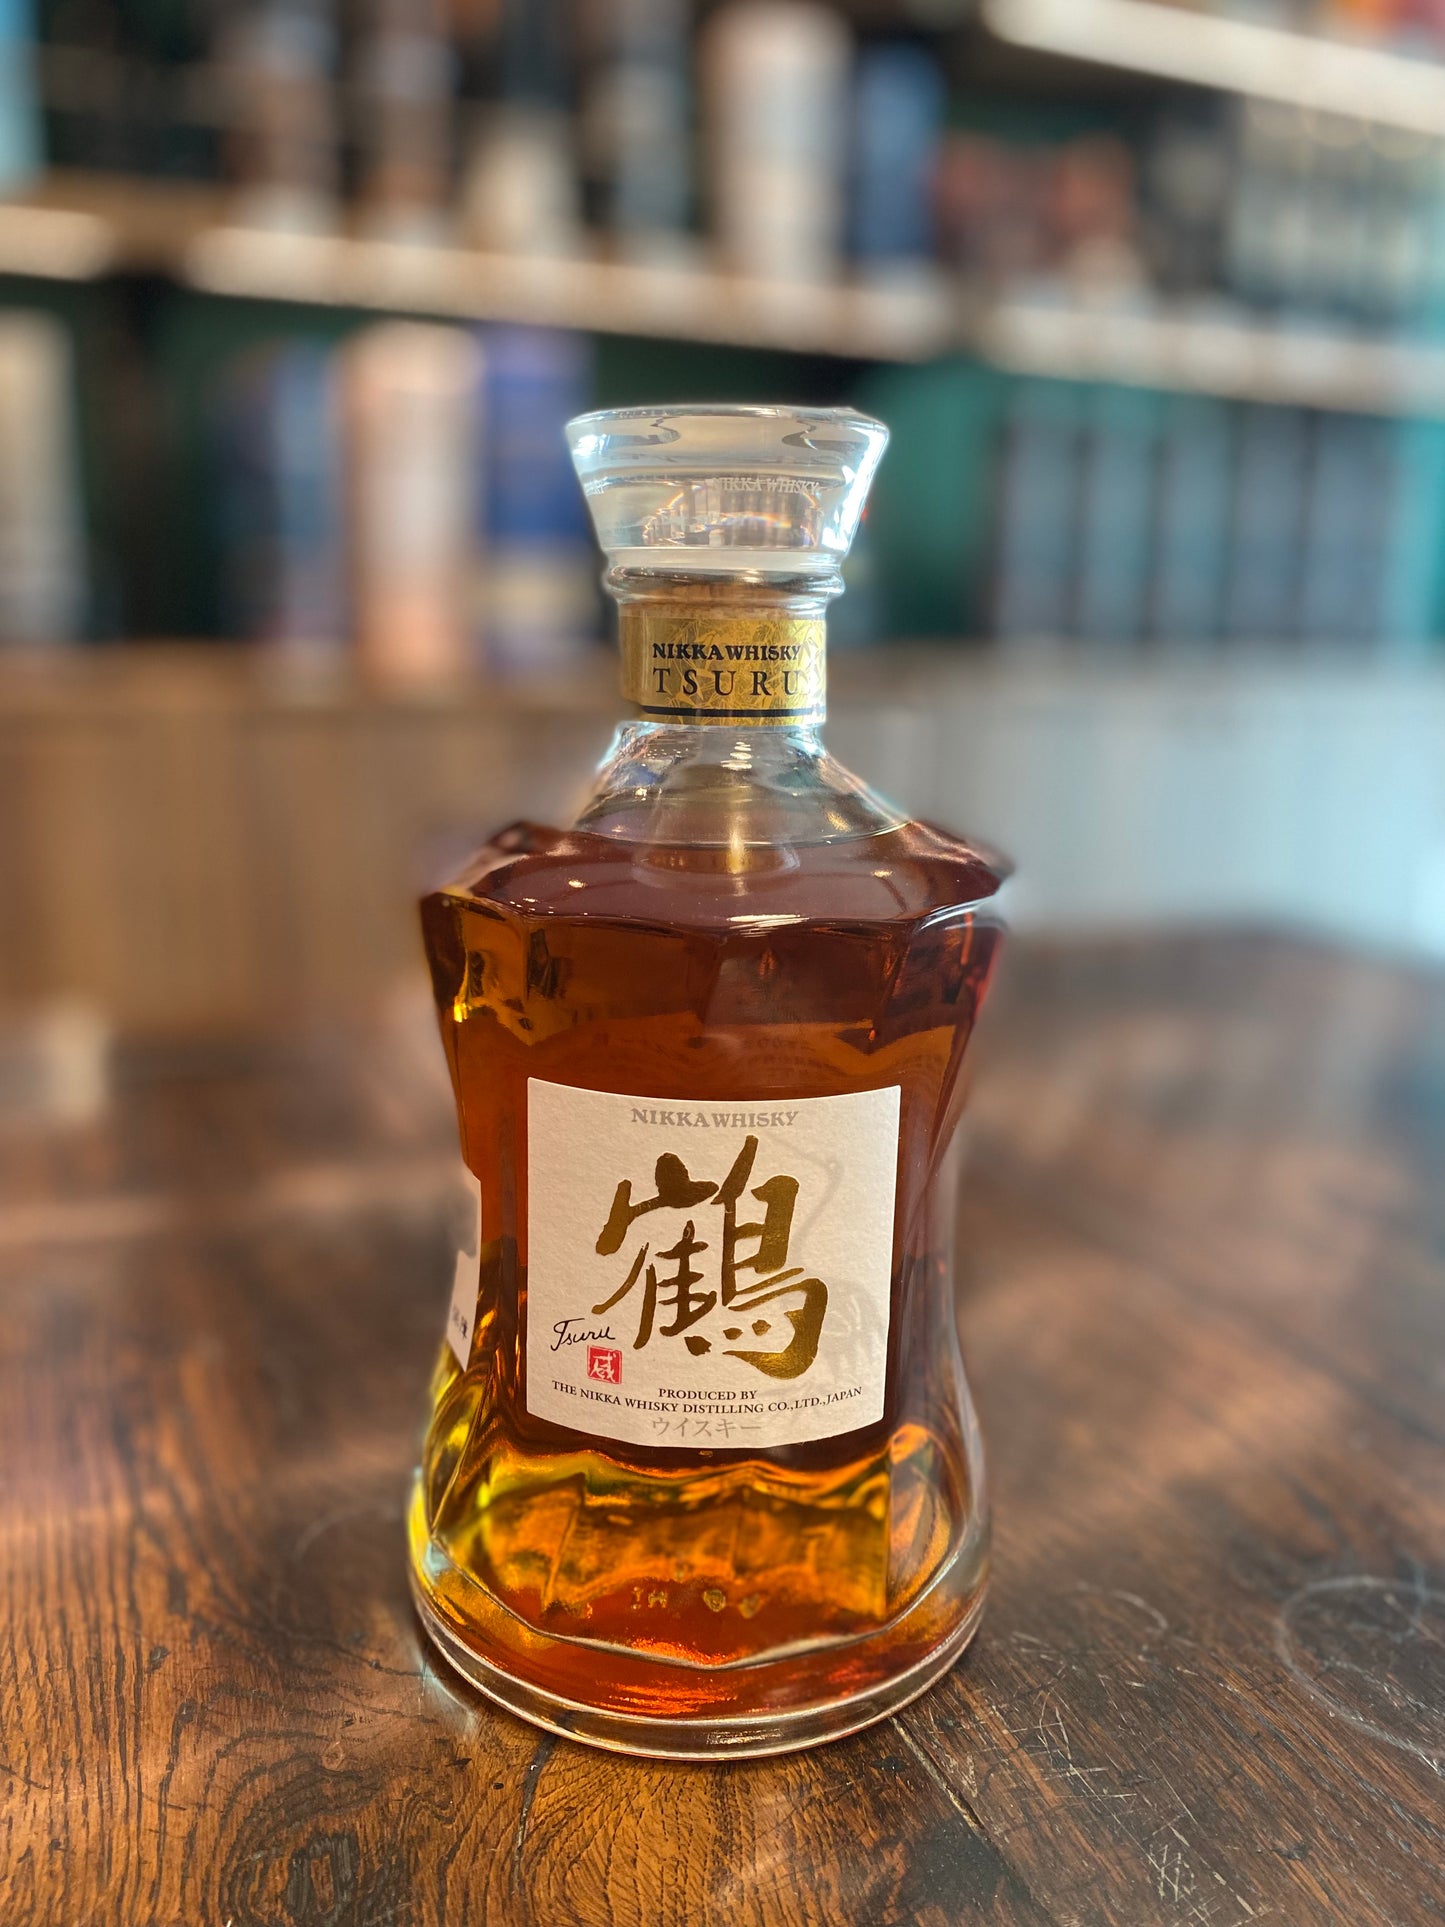 Nikka Whiskey Crane (limited to Yoichi Distillery) Gold Whisky NIKKA Whisky Magazine "BEST OF THE whisky" 700ml, 43%